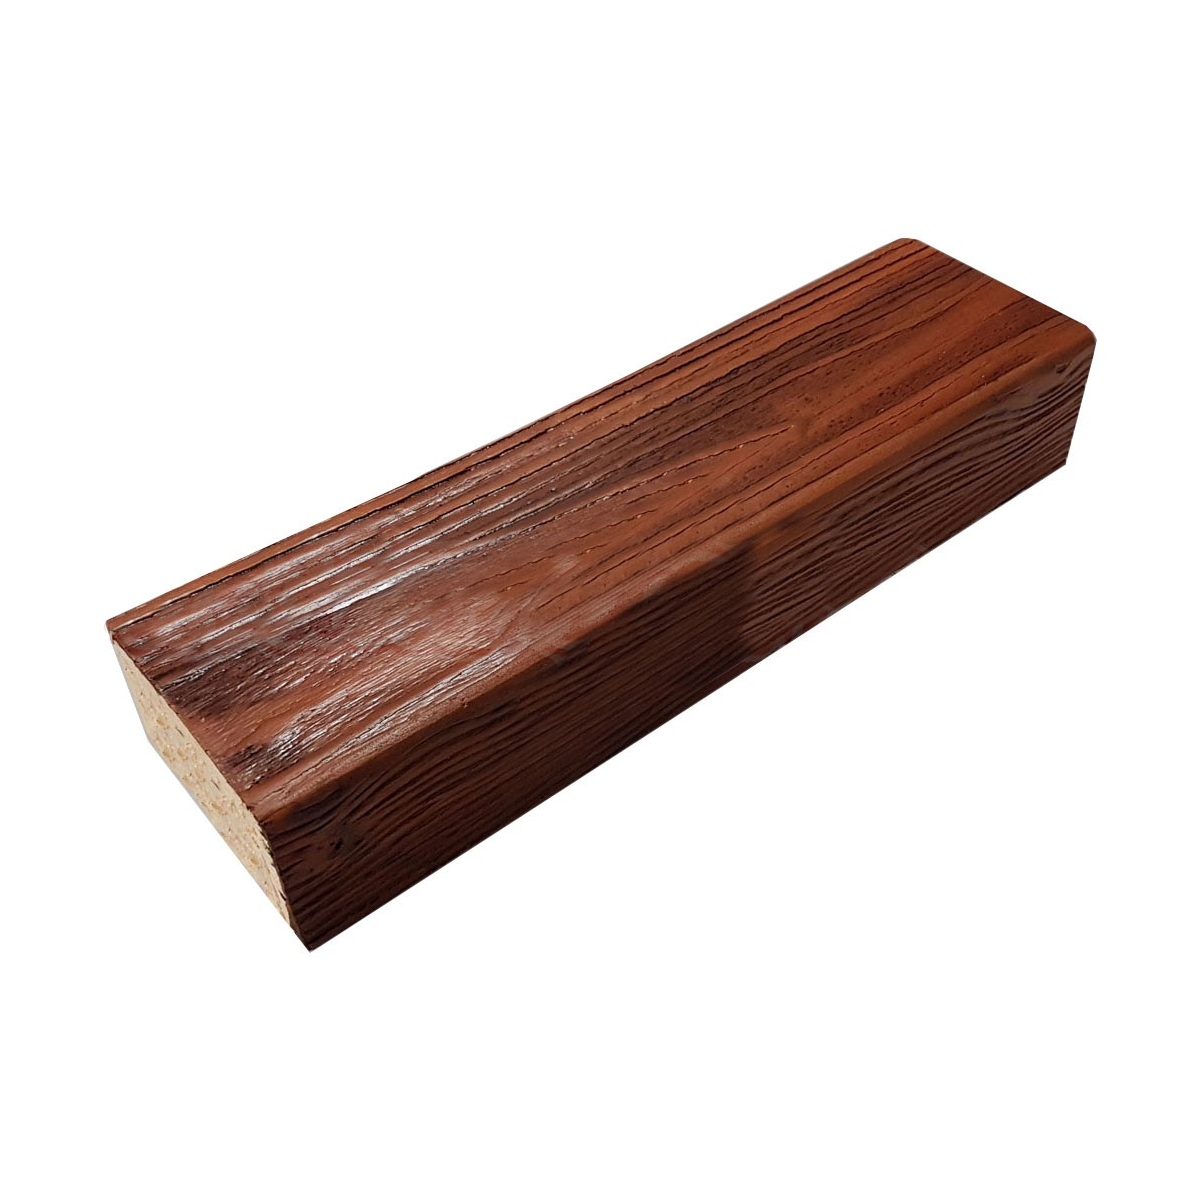 Viga imitación a madera fabricada en poliestireno extruido de 11X5x260 0